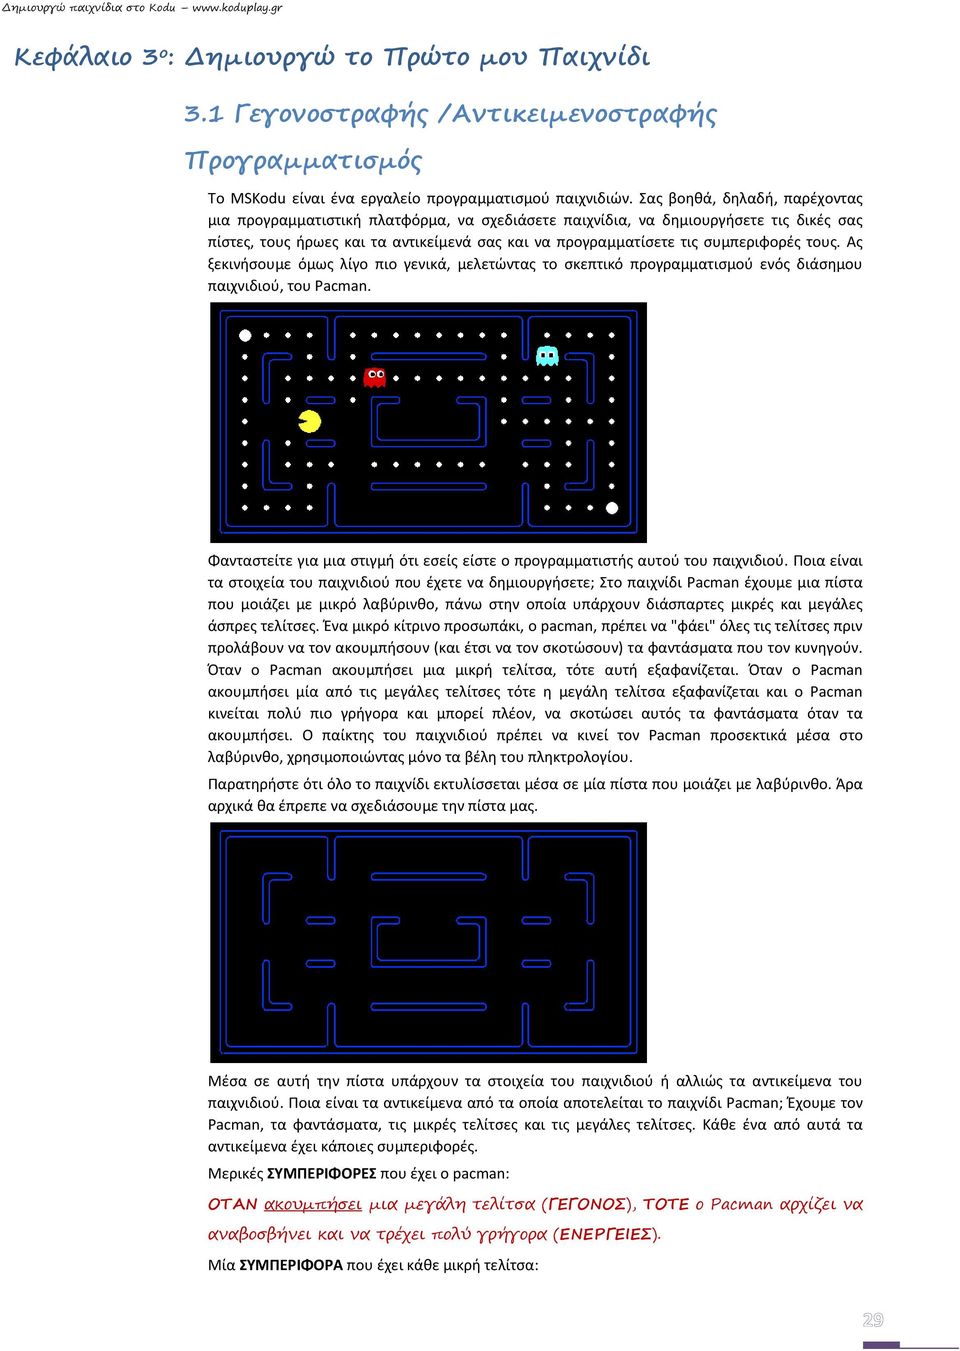 τους. Ας ξεκινήσουμε όμως λίγο πιο γενικά, μελετώντας το σκεπτικό προγραμματισμού ενός διάσημου παιχνιδιού, του Pacman.